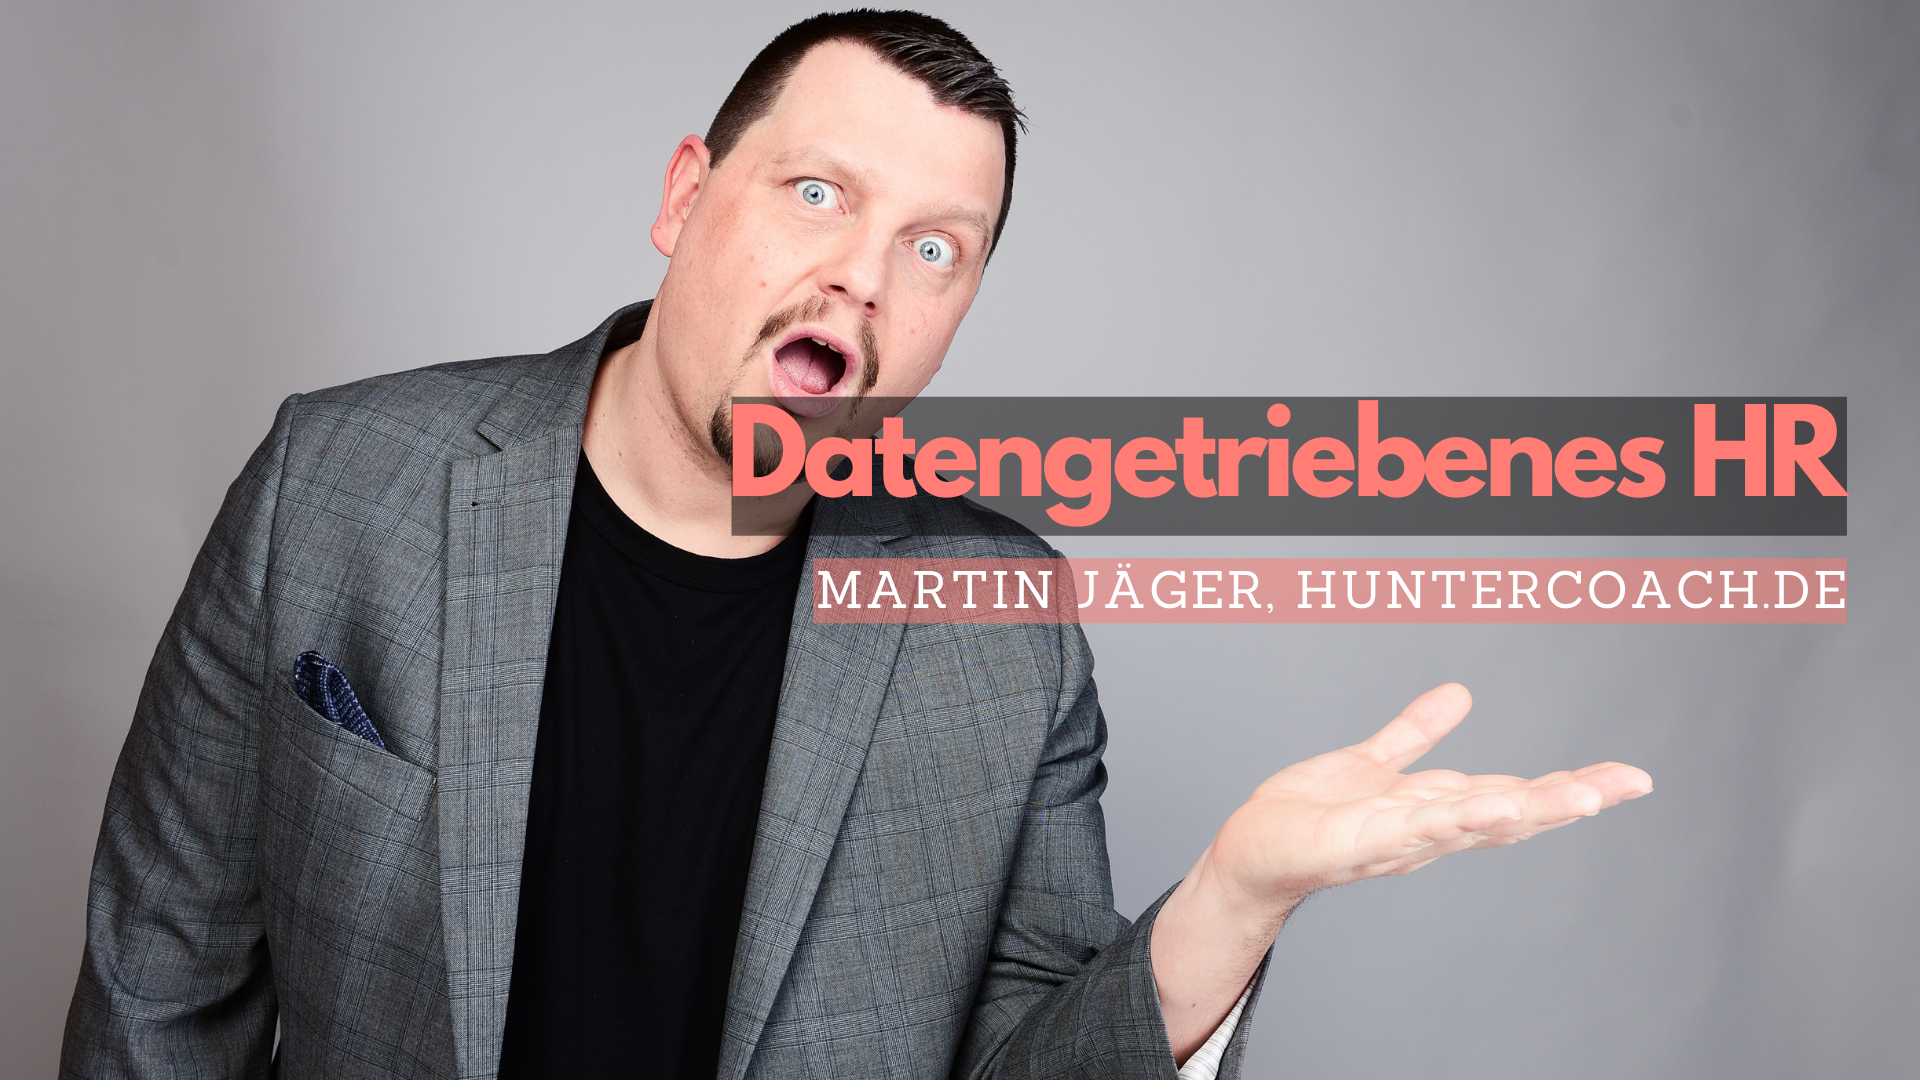 Martin Jäger von Huntercoach.de hält einen Vortrag über datengetriebenes HR.